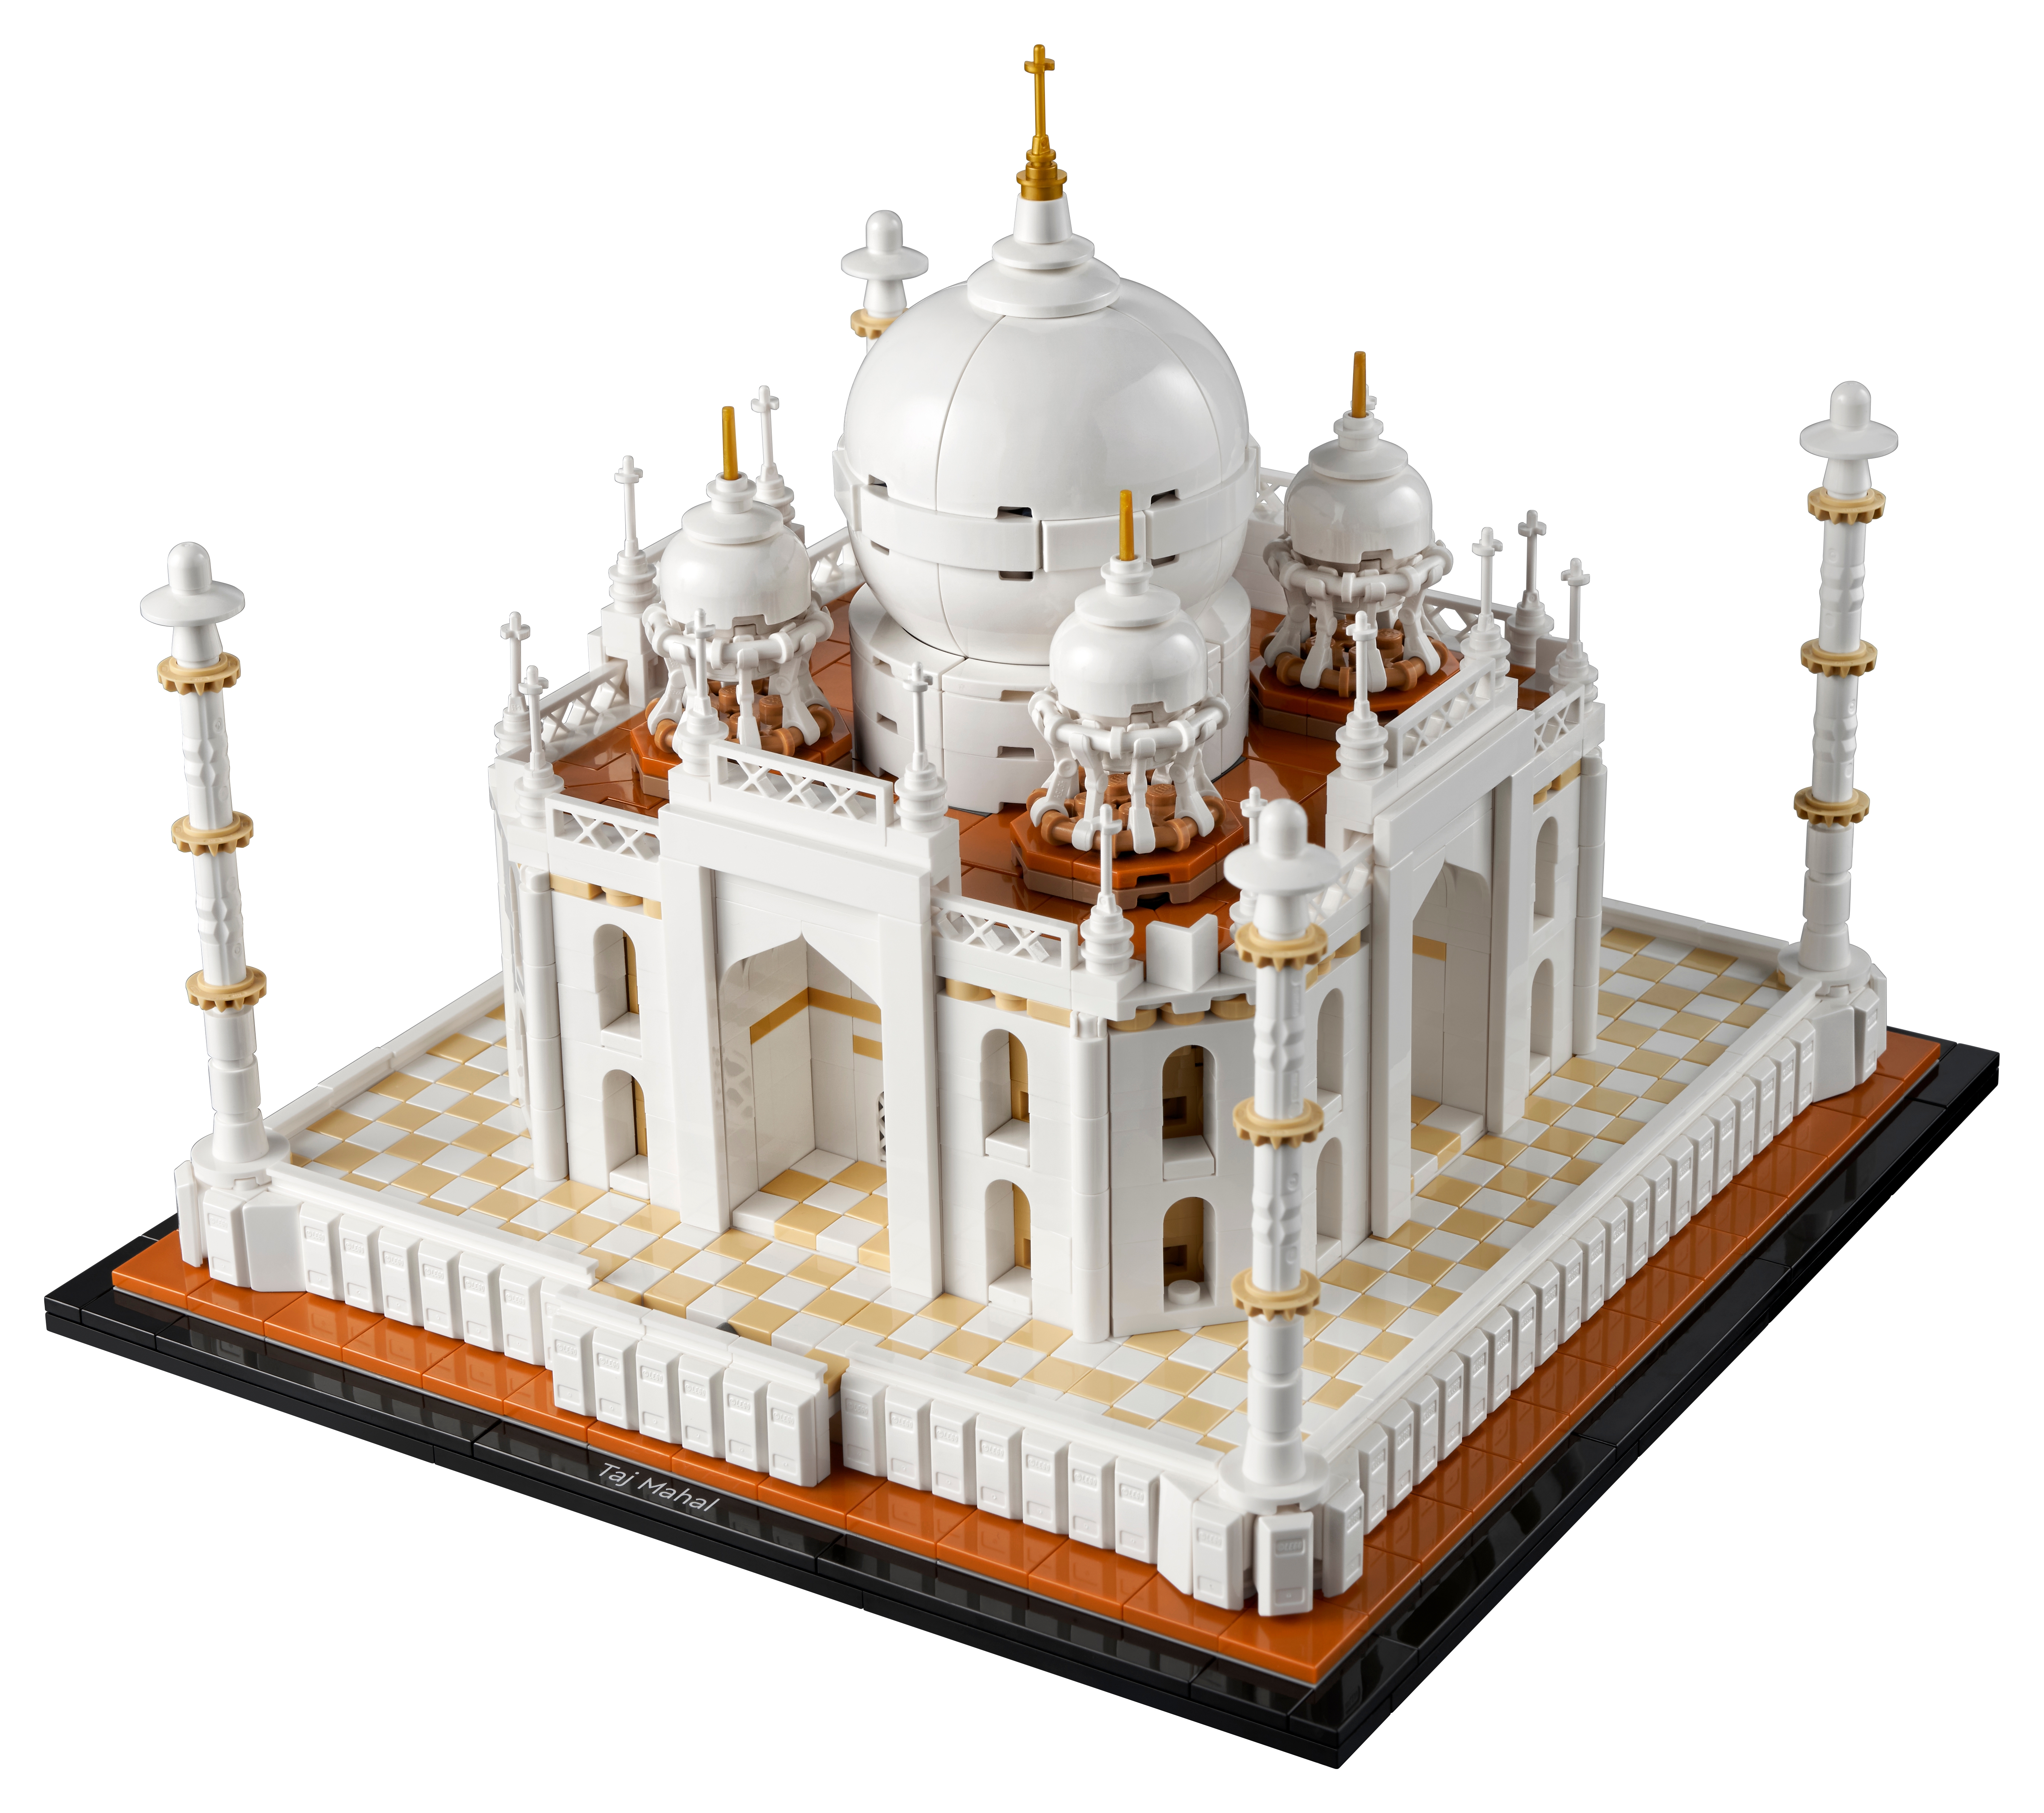 vitrine Uniquement A,2mm MOMOJA Vitrine en Acrylique Compatible avec la Vitrine Lego Architecture Taj Mahal 10256 